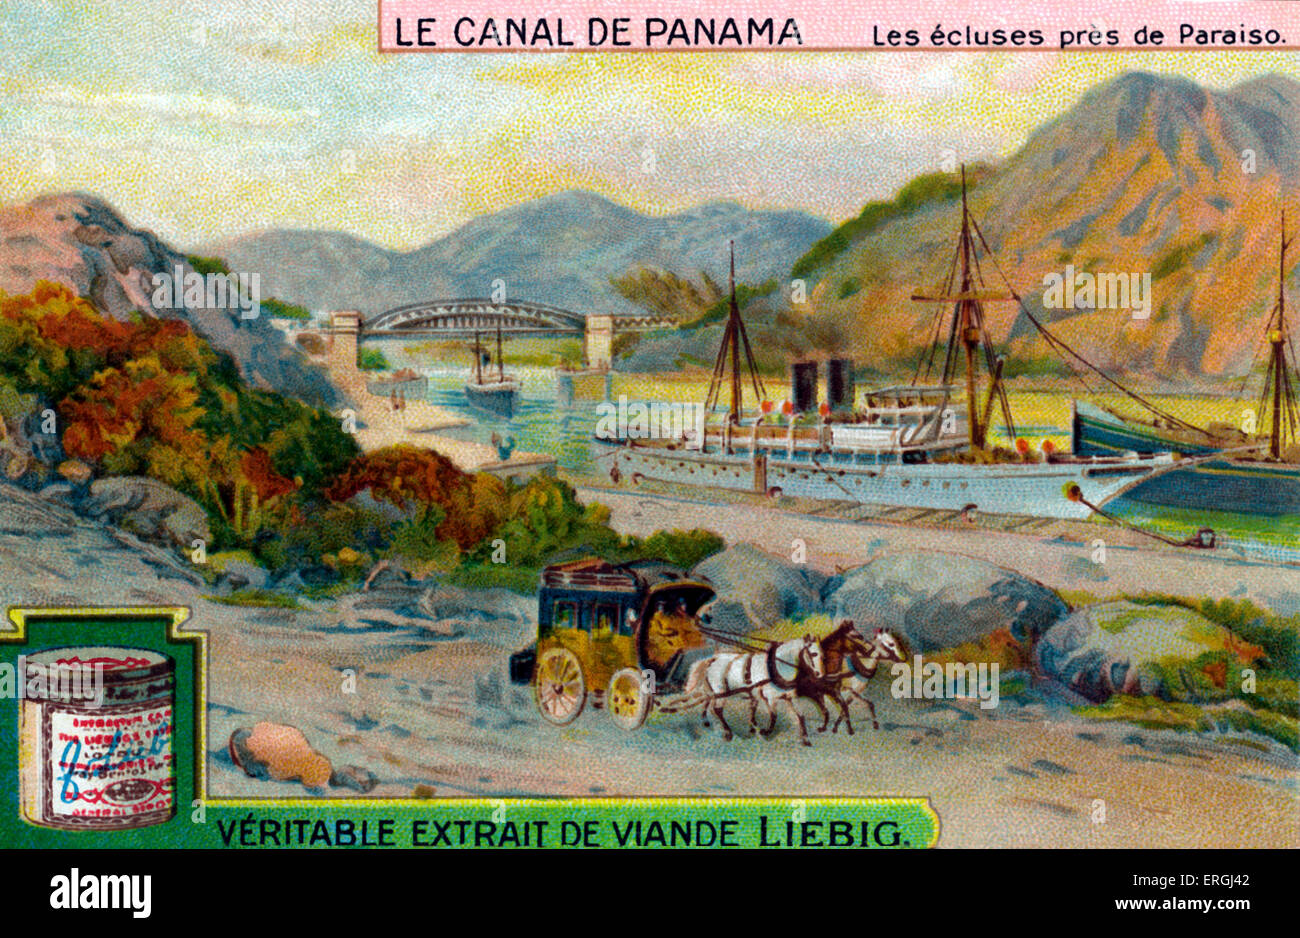 Der Panama-Kanal: Schleusen in der Nähe von Paraiso. Liebig Sammelkarten-Serie (französischer Titel: 'Le Canal de Panama').   Gebaut Stockfoto